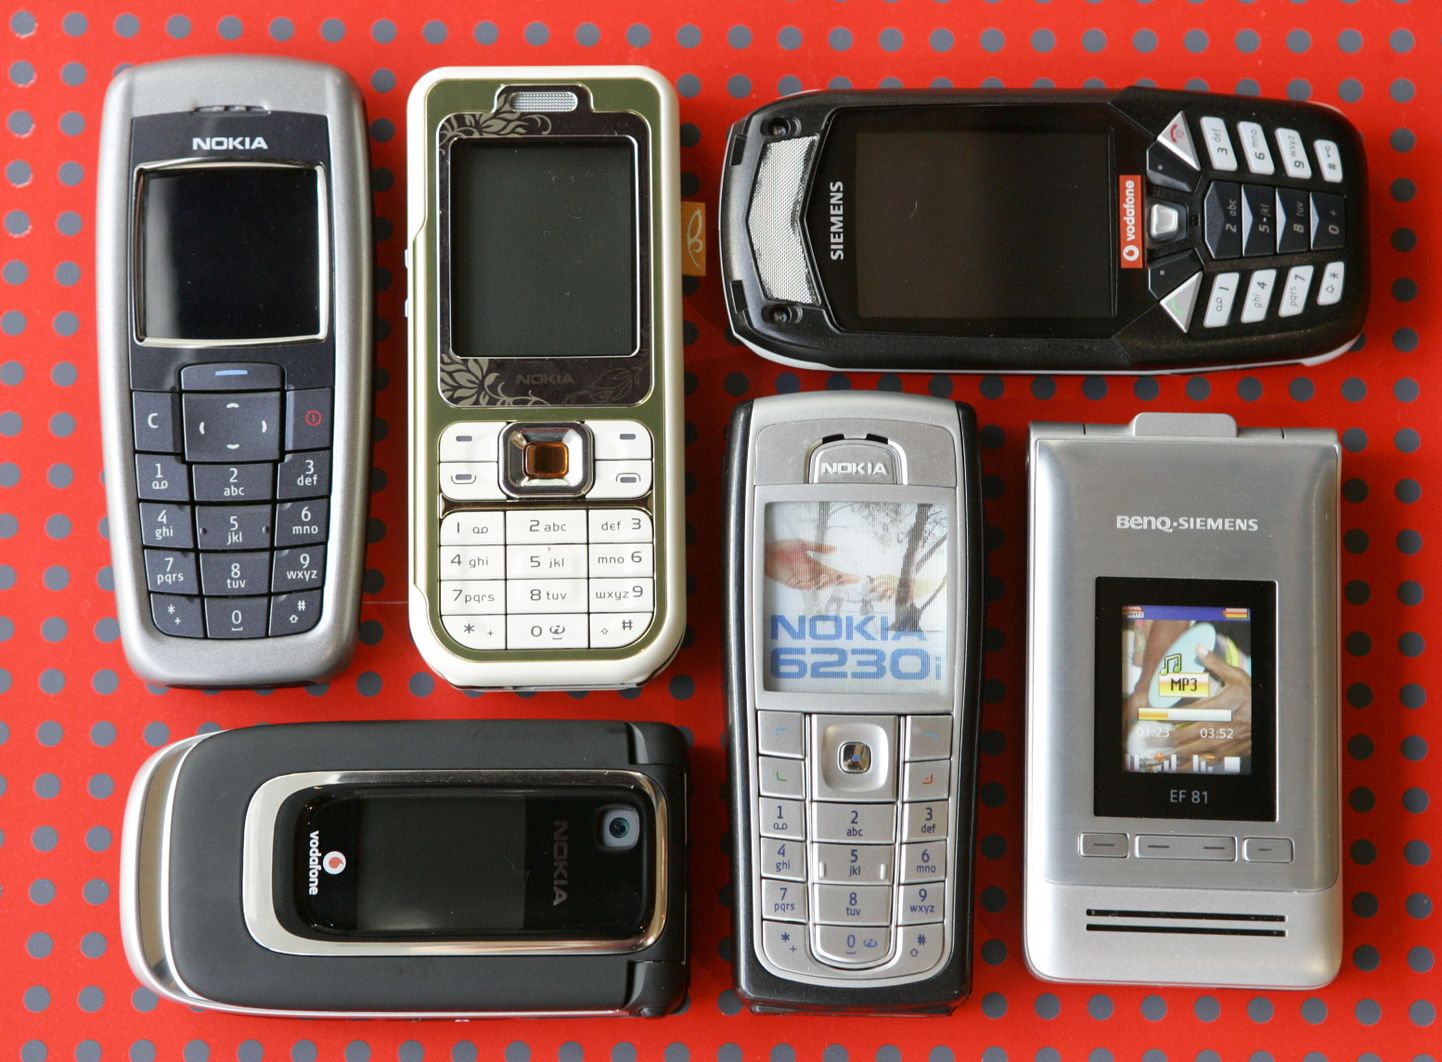 Neid mobiile tänapäeval enam suurt ei kasutata.